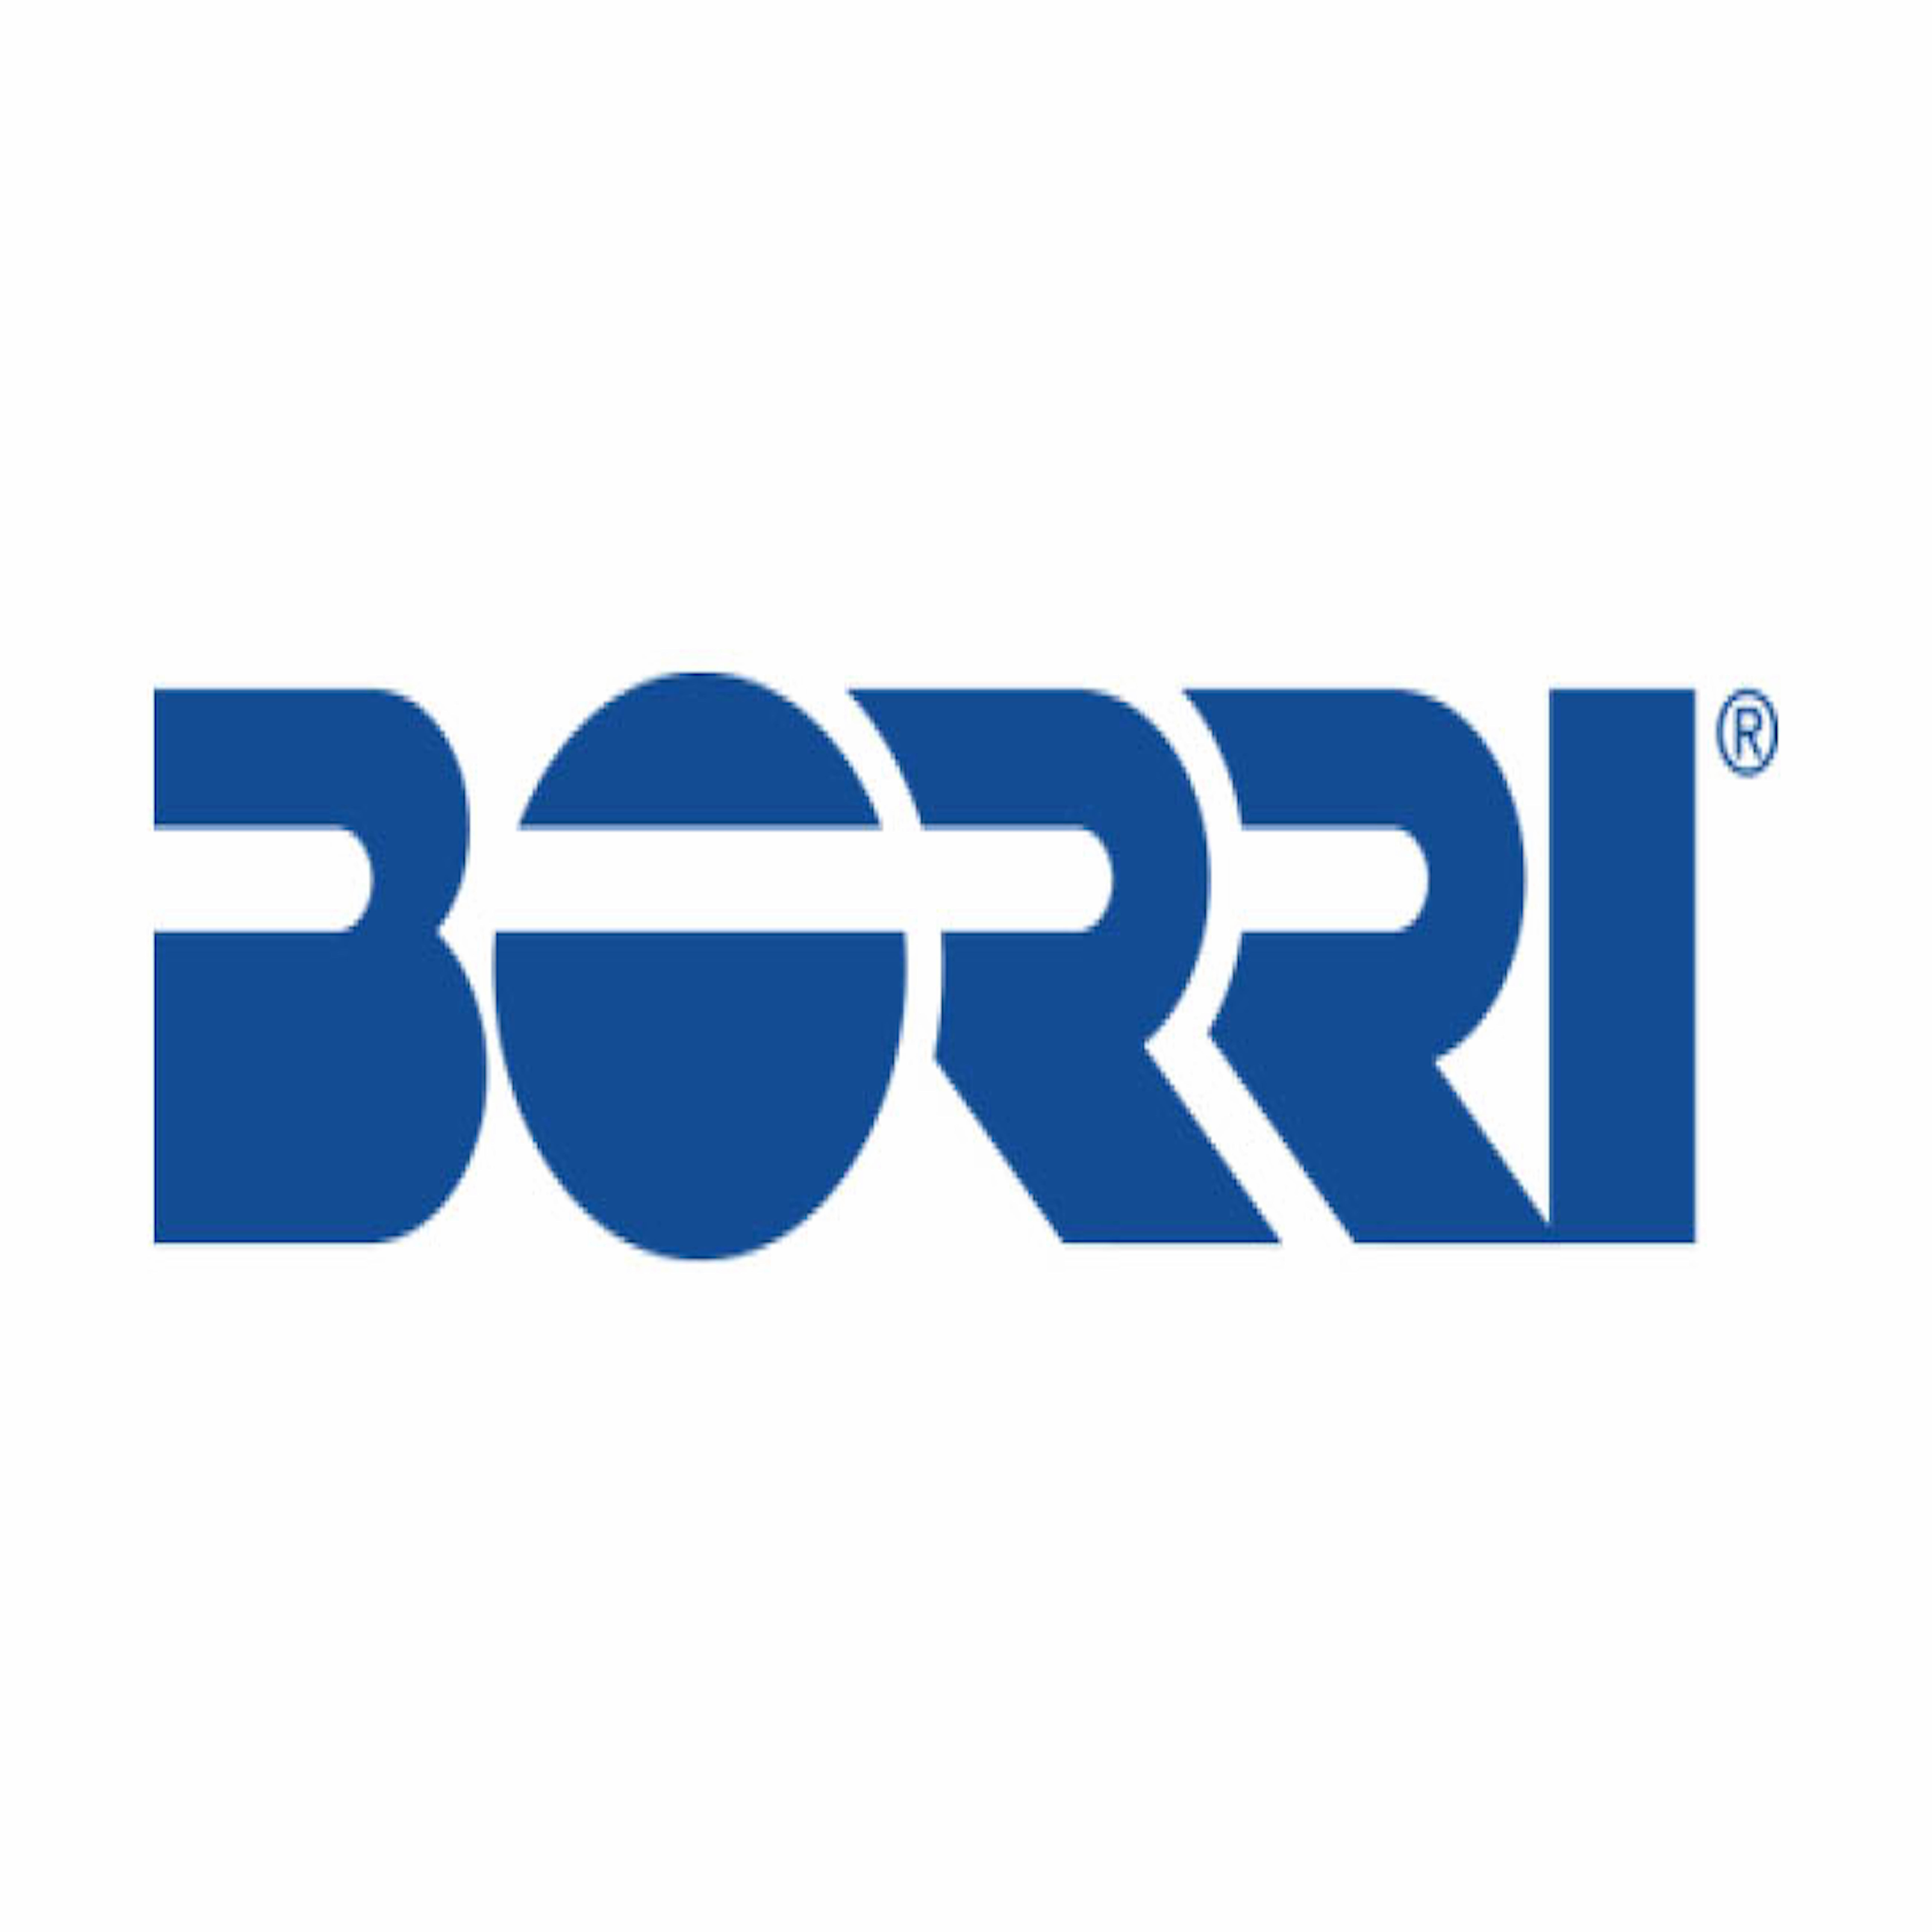 Borri-logo